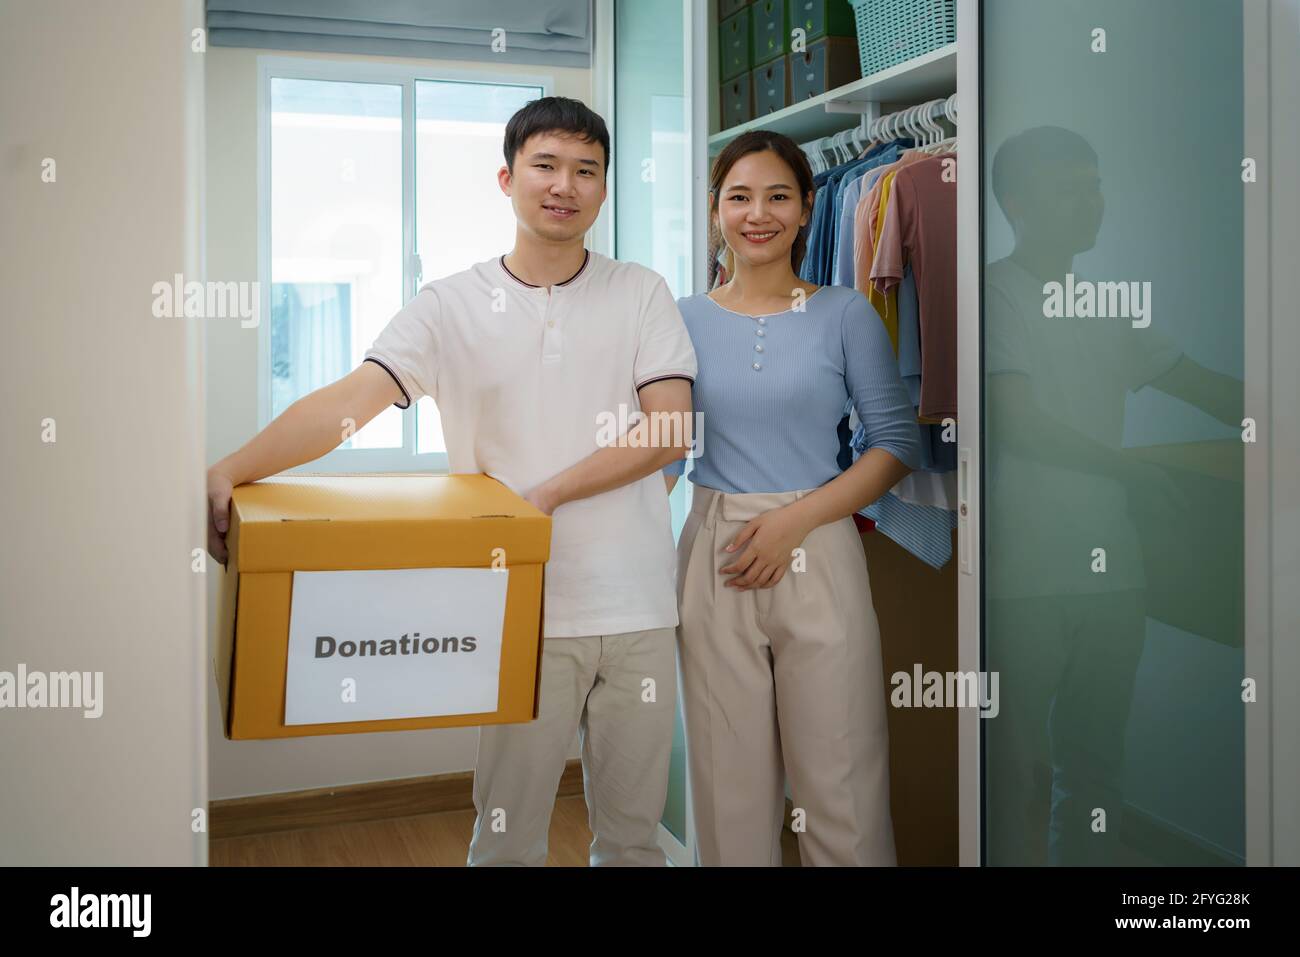 Les couples asiatiques sont debout près du placard des vêtements dans le dressing portant une boîte de vêtements donnés à apporter au centre de dons. Banque D'Images